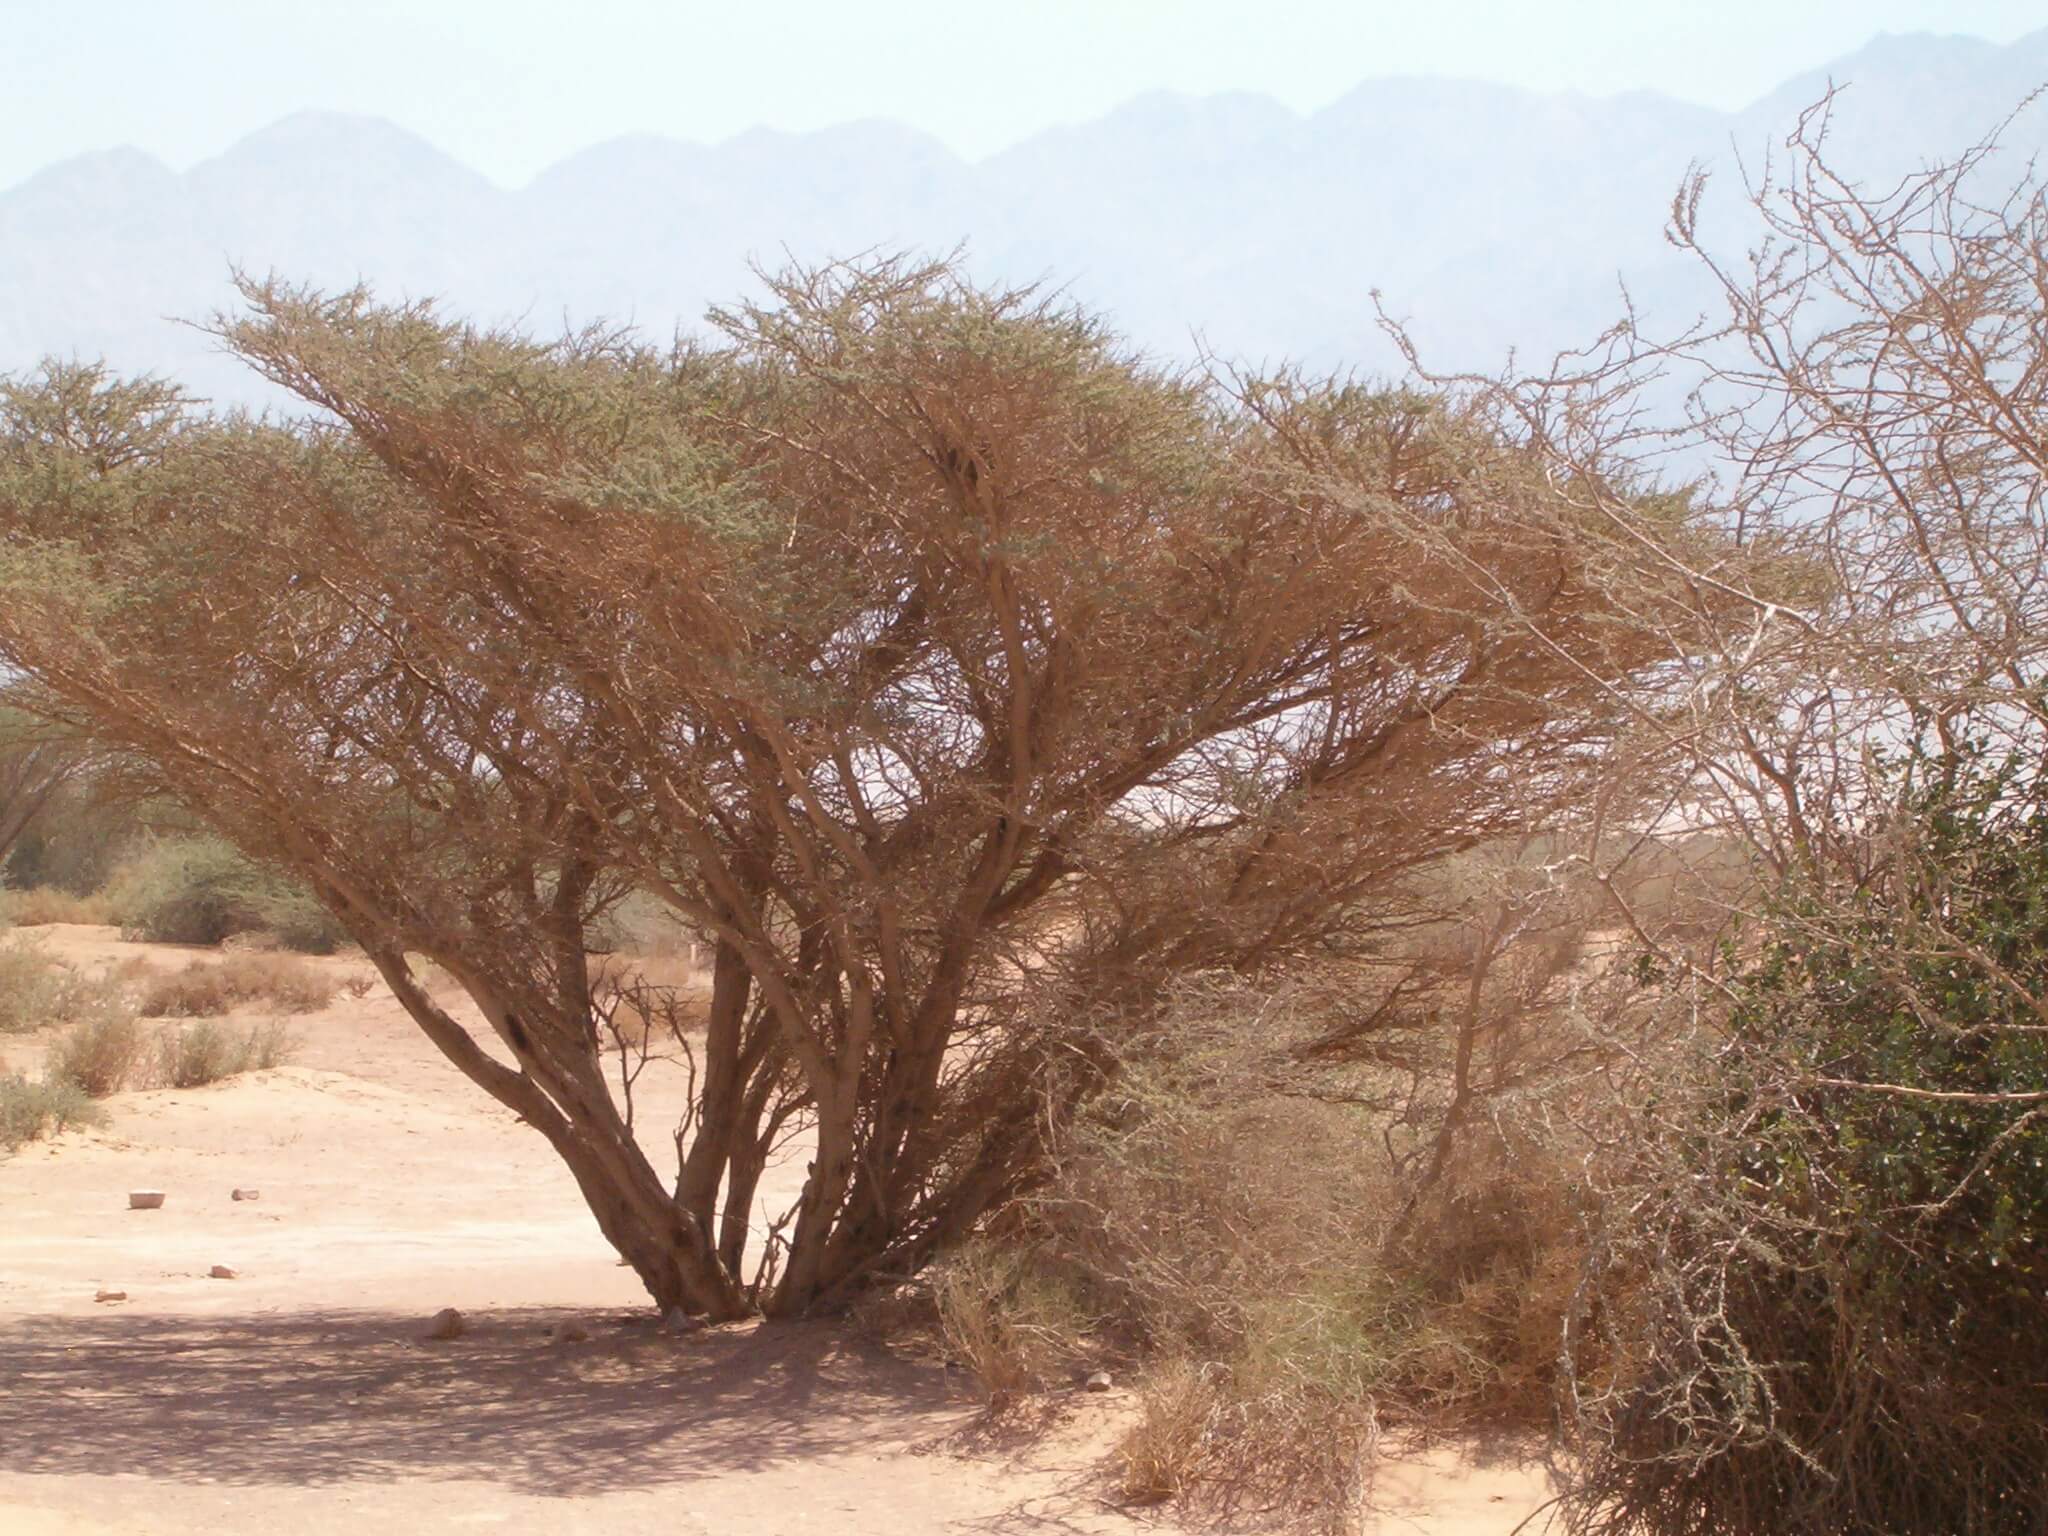 حول أشجار السنط التي تميز المناظر الطبيعية في البراري، يتشكل ارتباط بالطبيعة، يصعب تقييم قيمتها من الناحية الاقتصادية. الصورة: ي.س. في ويكيبيديا العبرية، CC BY-SA 3.0